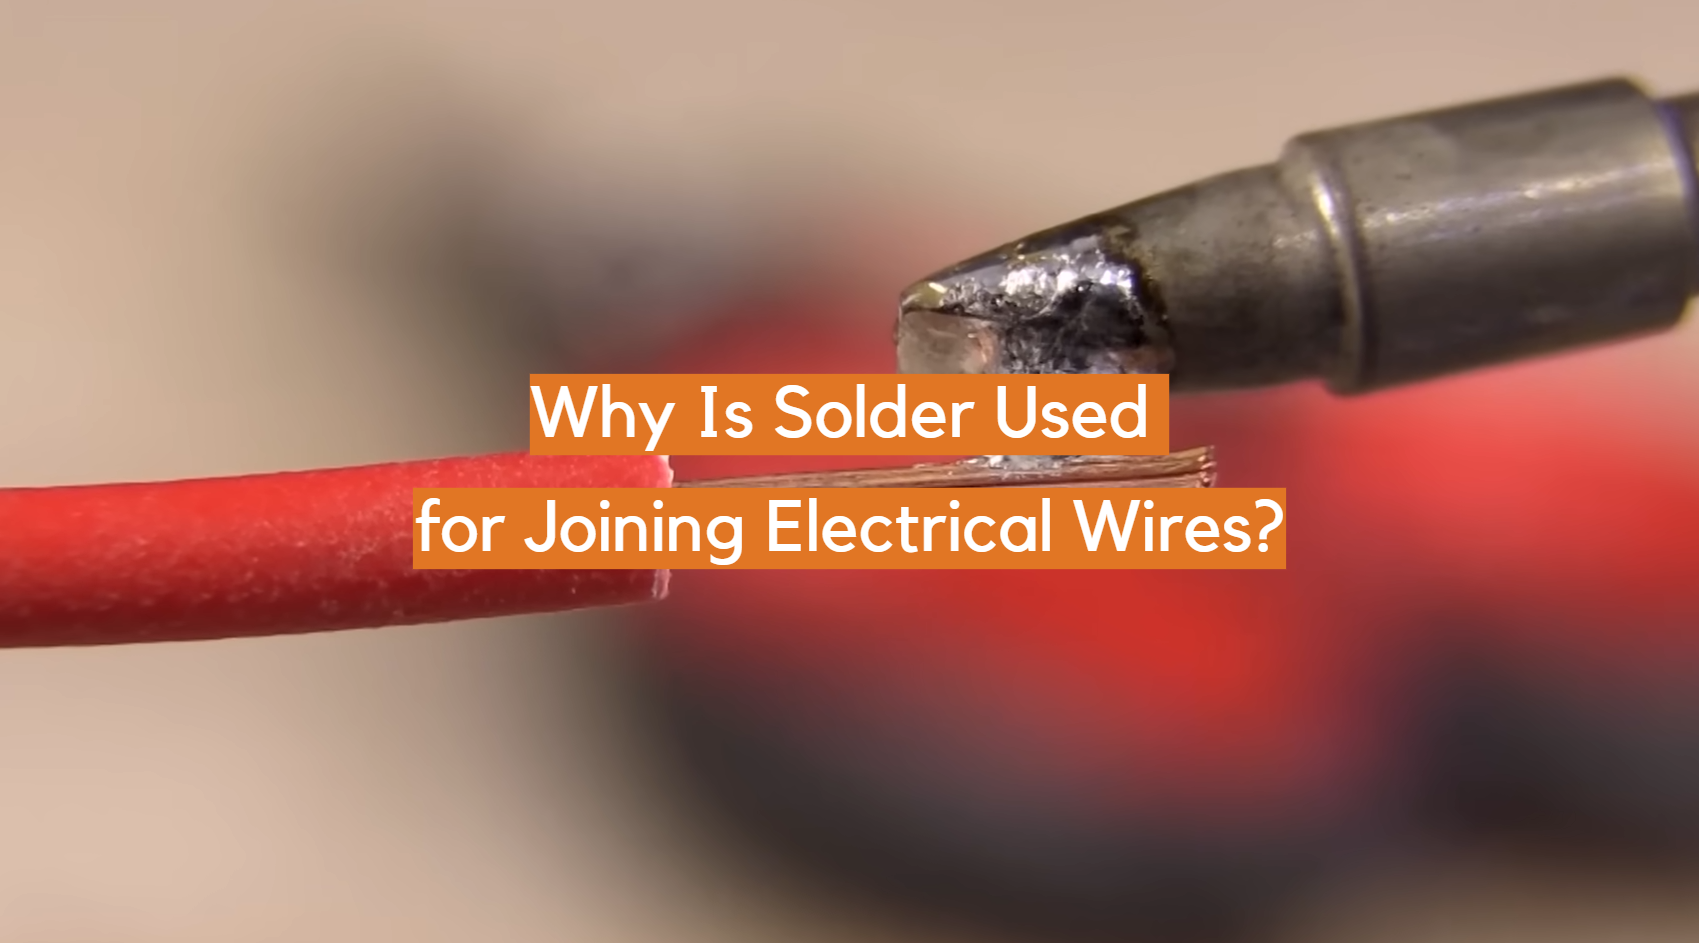 ¿Por qué se usa soldadura para unir cables eléctricos?